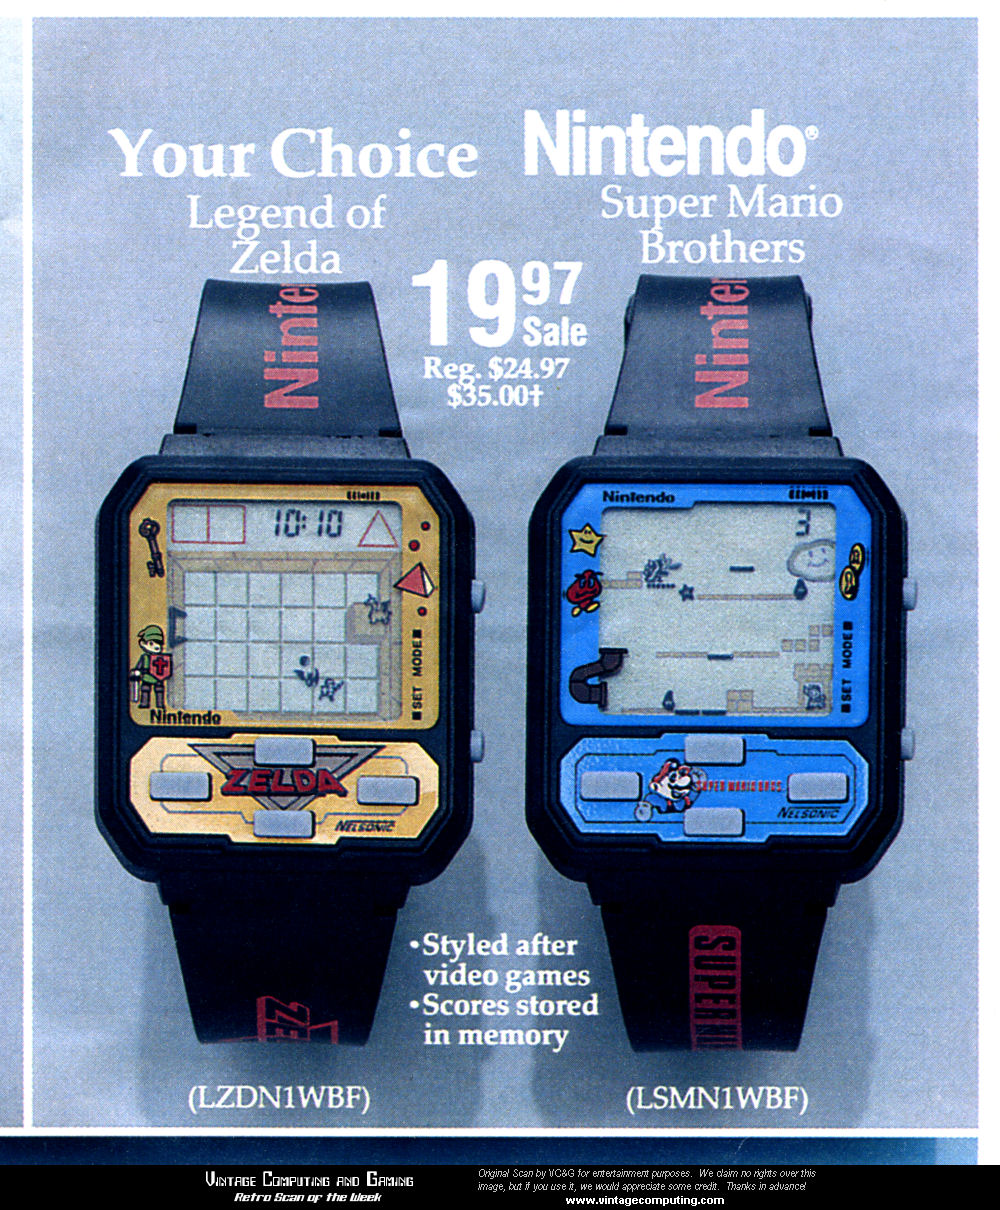 Screw Apple’s Watch, Nintendo’s Watches Were Way Cooler